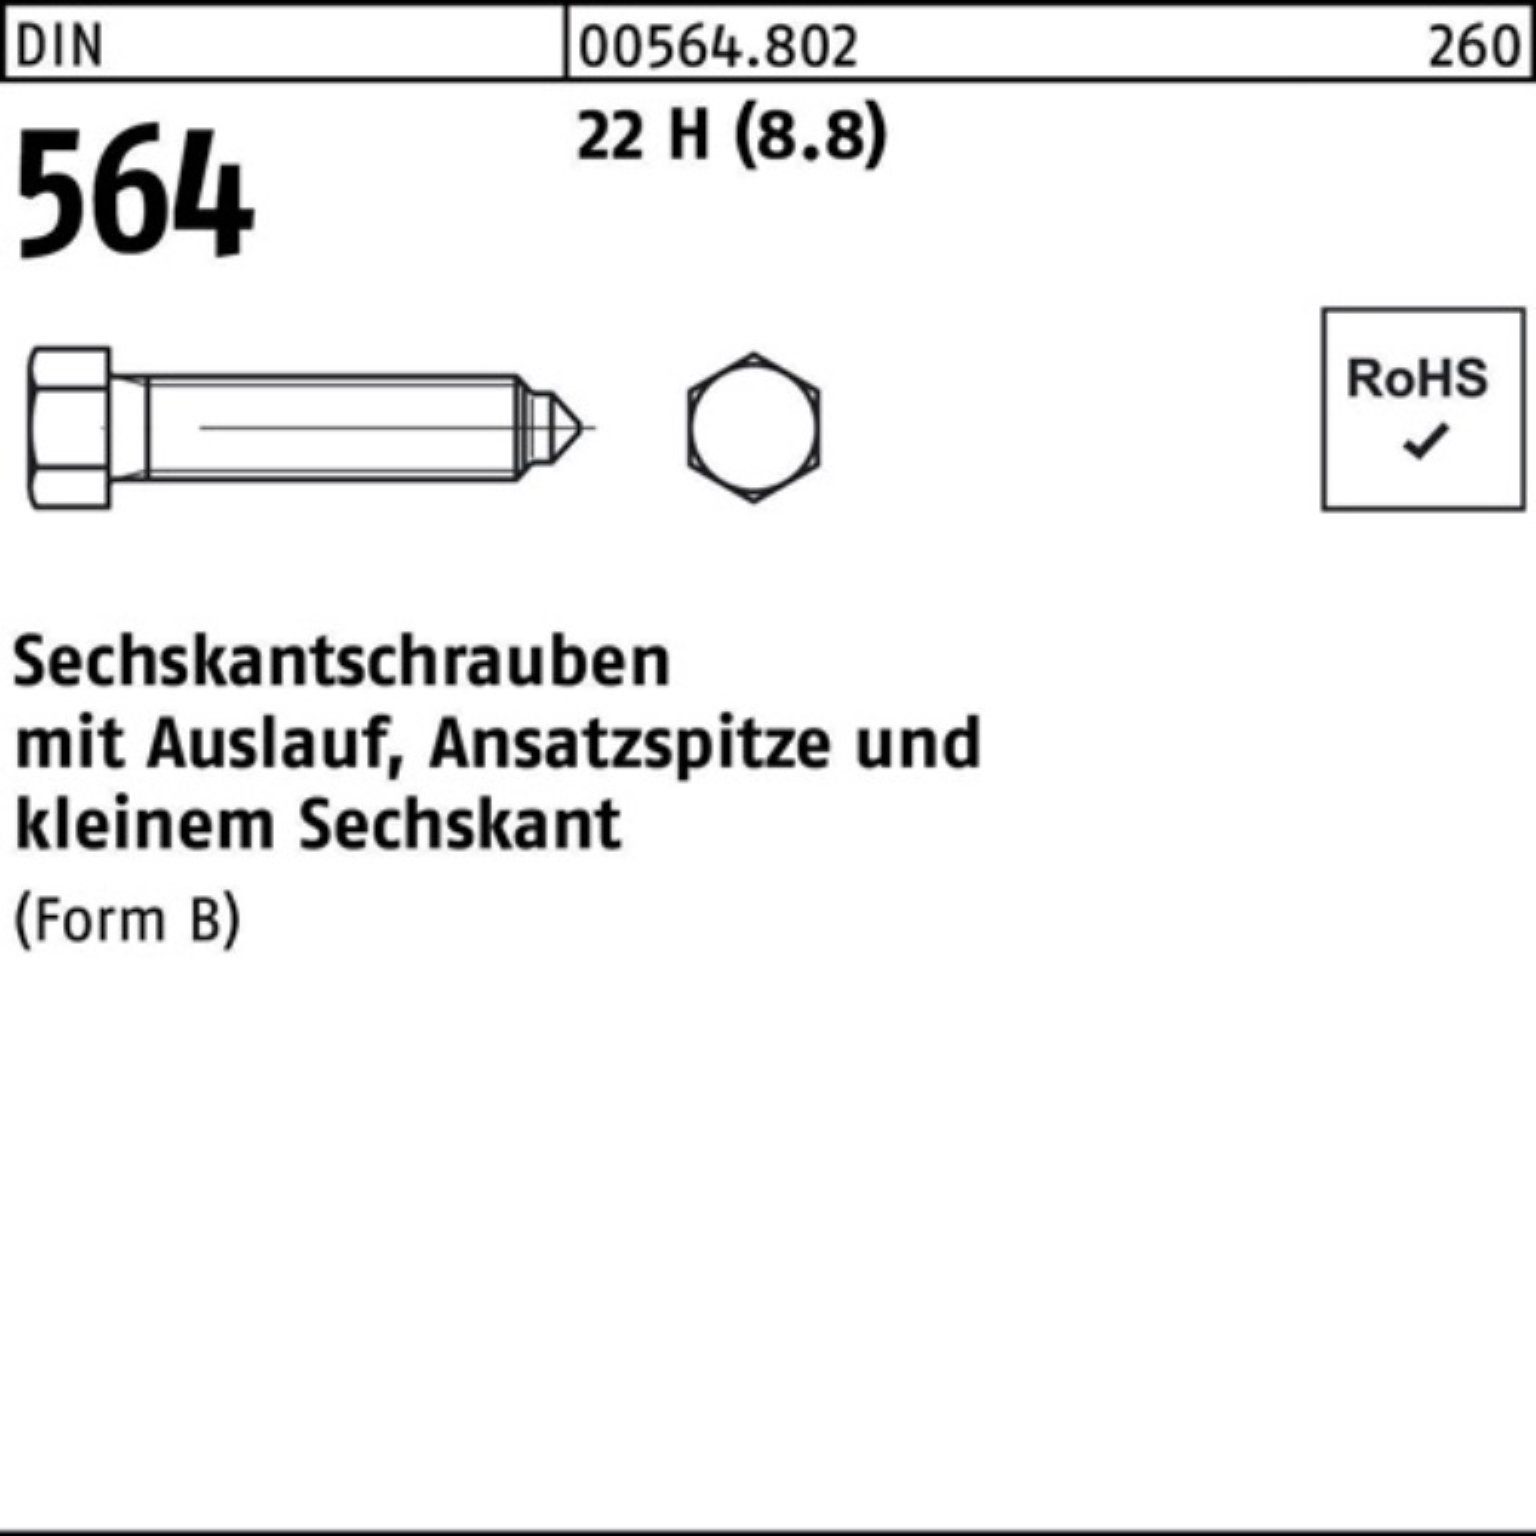 Reyher Sechskantschraube 100er Pack Sechskantschraube DIN 564 Ansatzspitze/Auslauf BM 8x 35 22